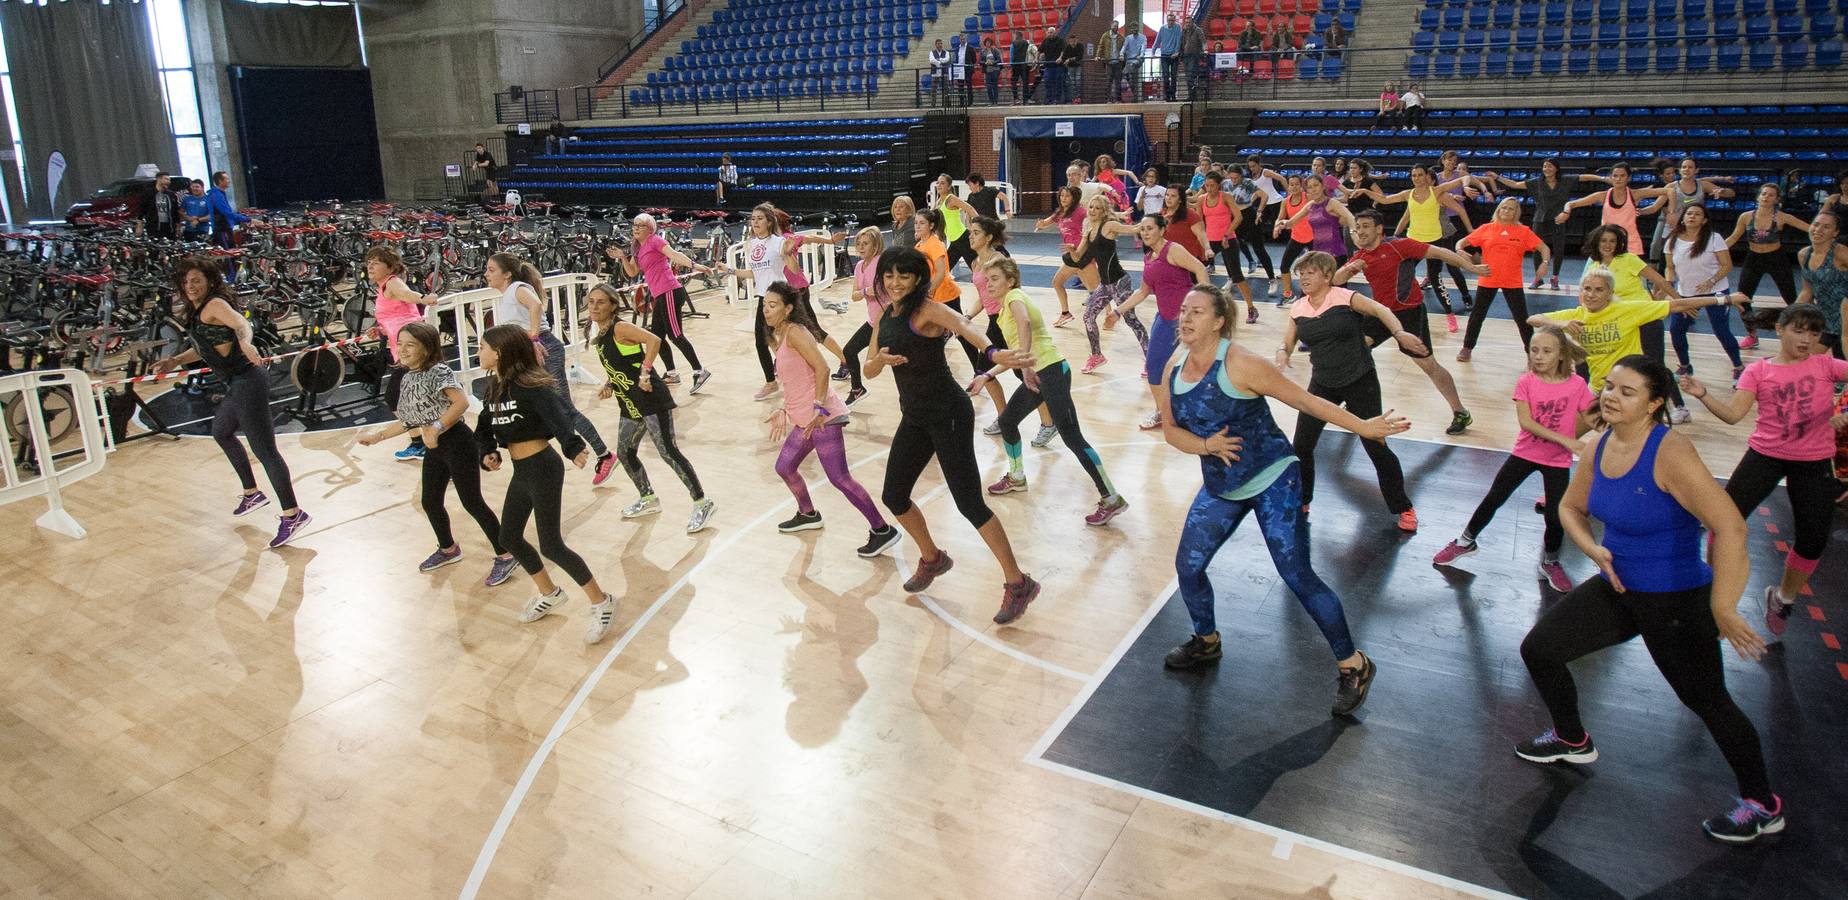 Se ha celebrado en el Palacio de los Deportes el III Logroño Fitness Day, cuya recaudación se destinará de forma íntegra a la Asociación Española contra el Cáncer (AECC) para la investigación sobre esta enfermedad